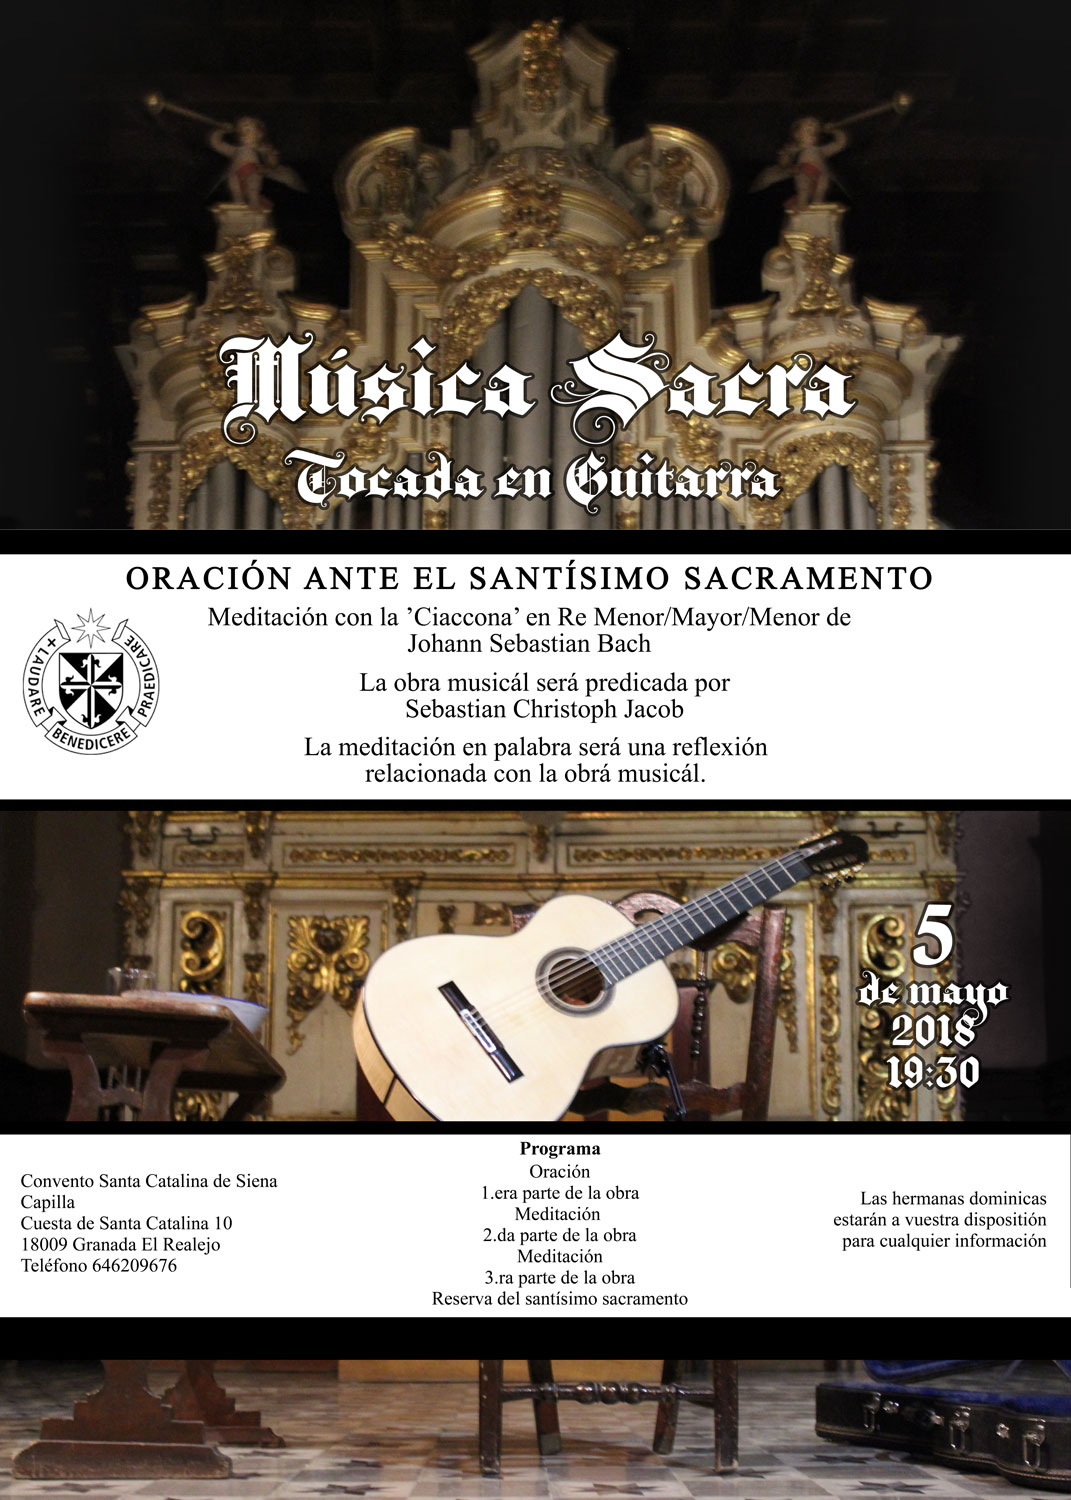 Sebastian Christoph Jacob Musica Sacra